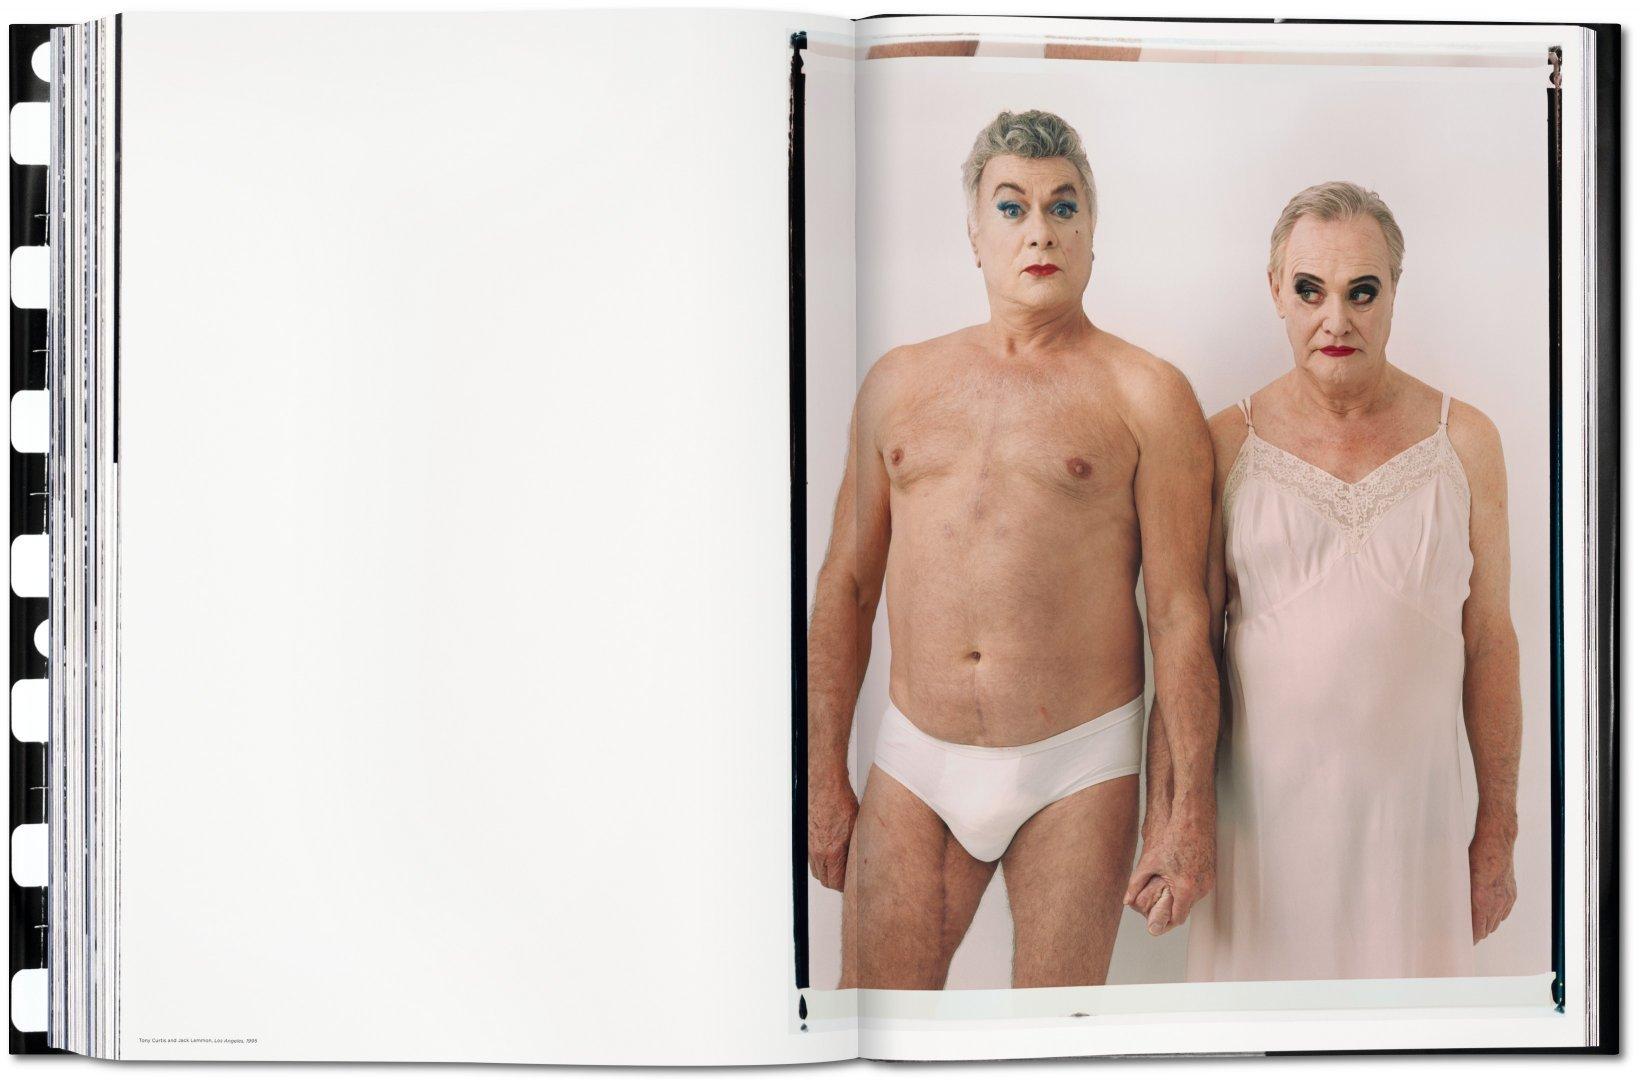 Contemporary Annie Leibovitz Sumo Taschen Book, Patti Smith Cover